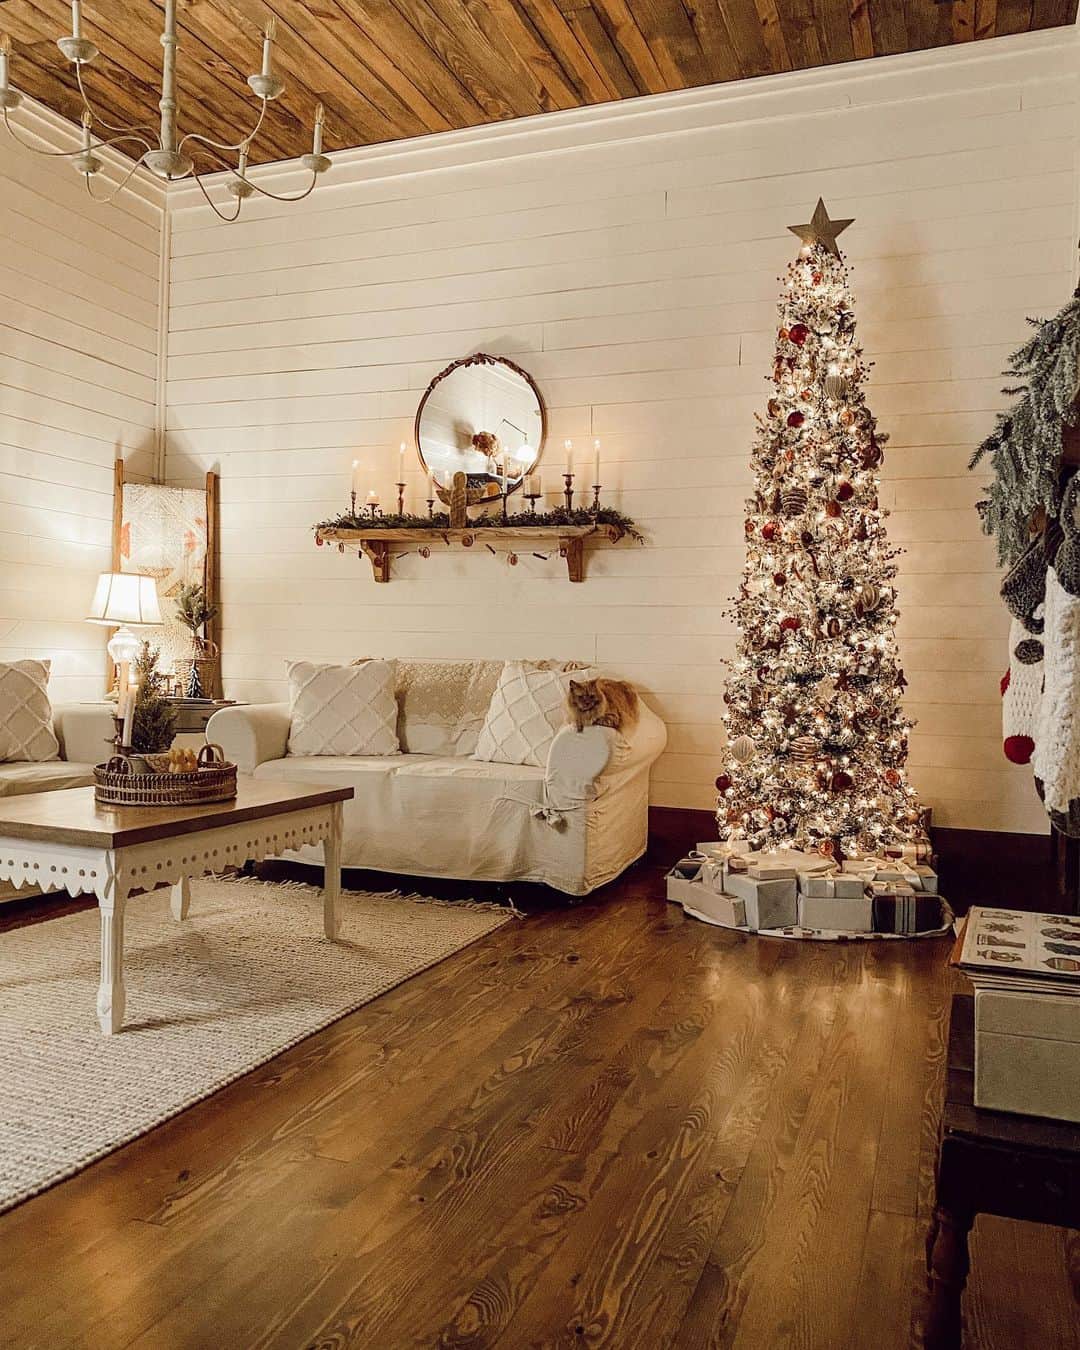 Vintage White Christmas Aesthetic for Farmhouse Living Room - Soul & Lane